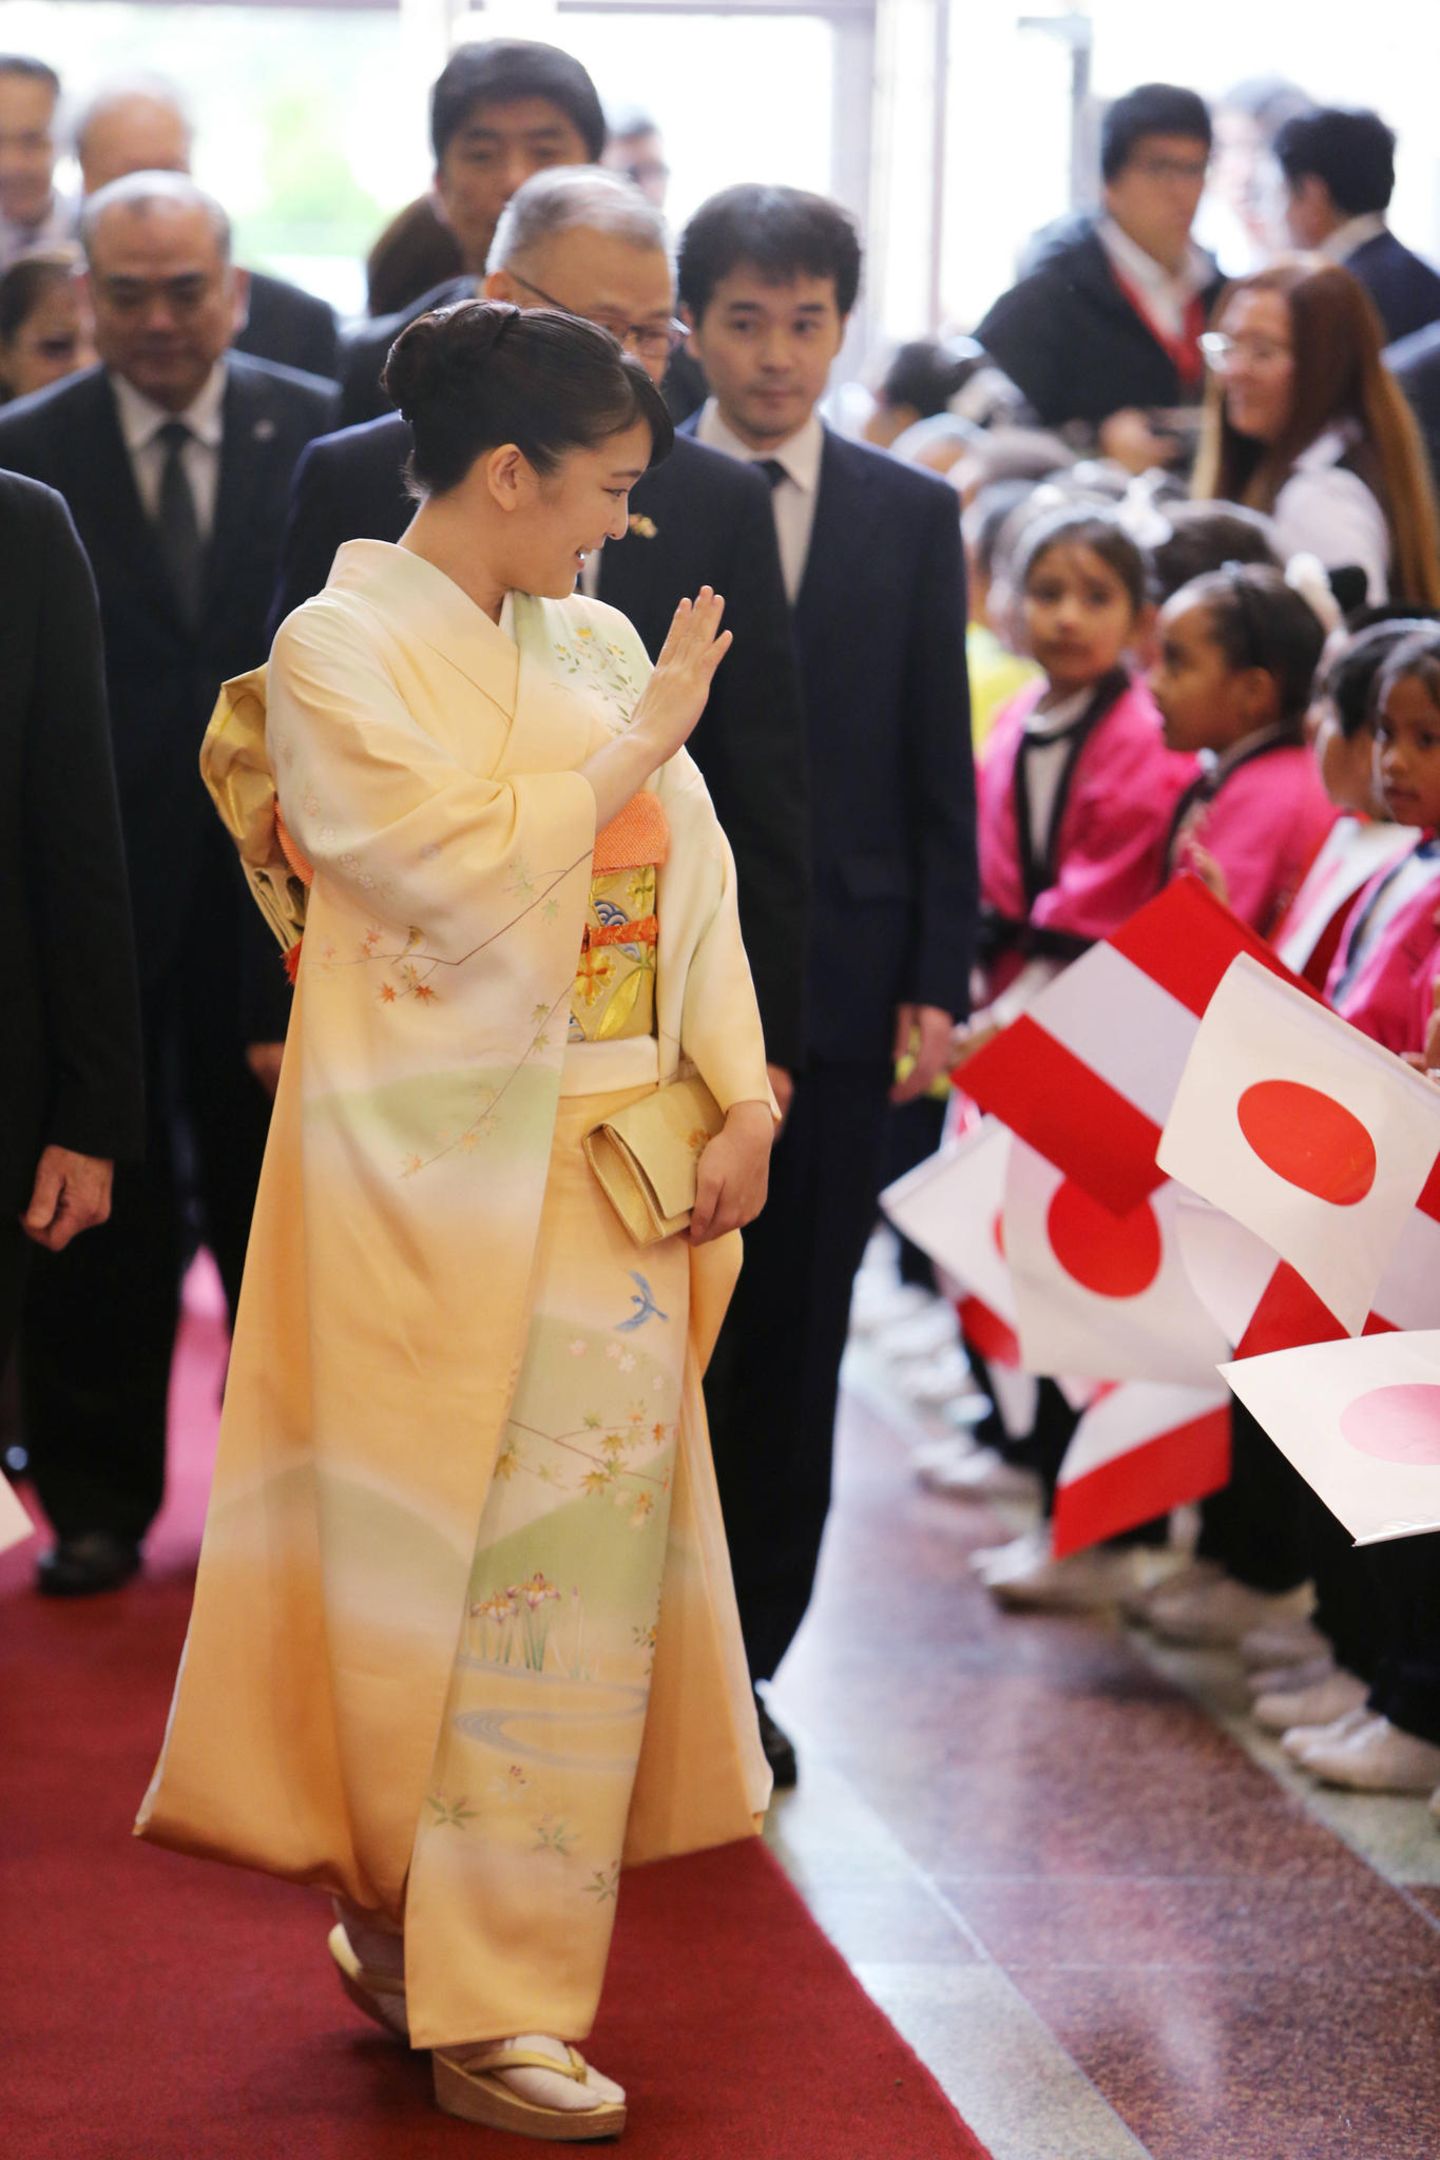 10. Juli 2019  Prinzessin Mako ist für einen sechstägigen Staatsbesuch nach Peru gereist, um das 120. Jubiläum der ersten japanischen Einwanderer in dem südamerikanischen Land zu feiern. Im japanisch-peruanischen Kulturzentrum wird die älteste Nichte von Kaiser Naruhito von 200 Kindern willkommen geheißen.